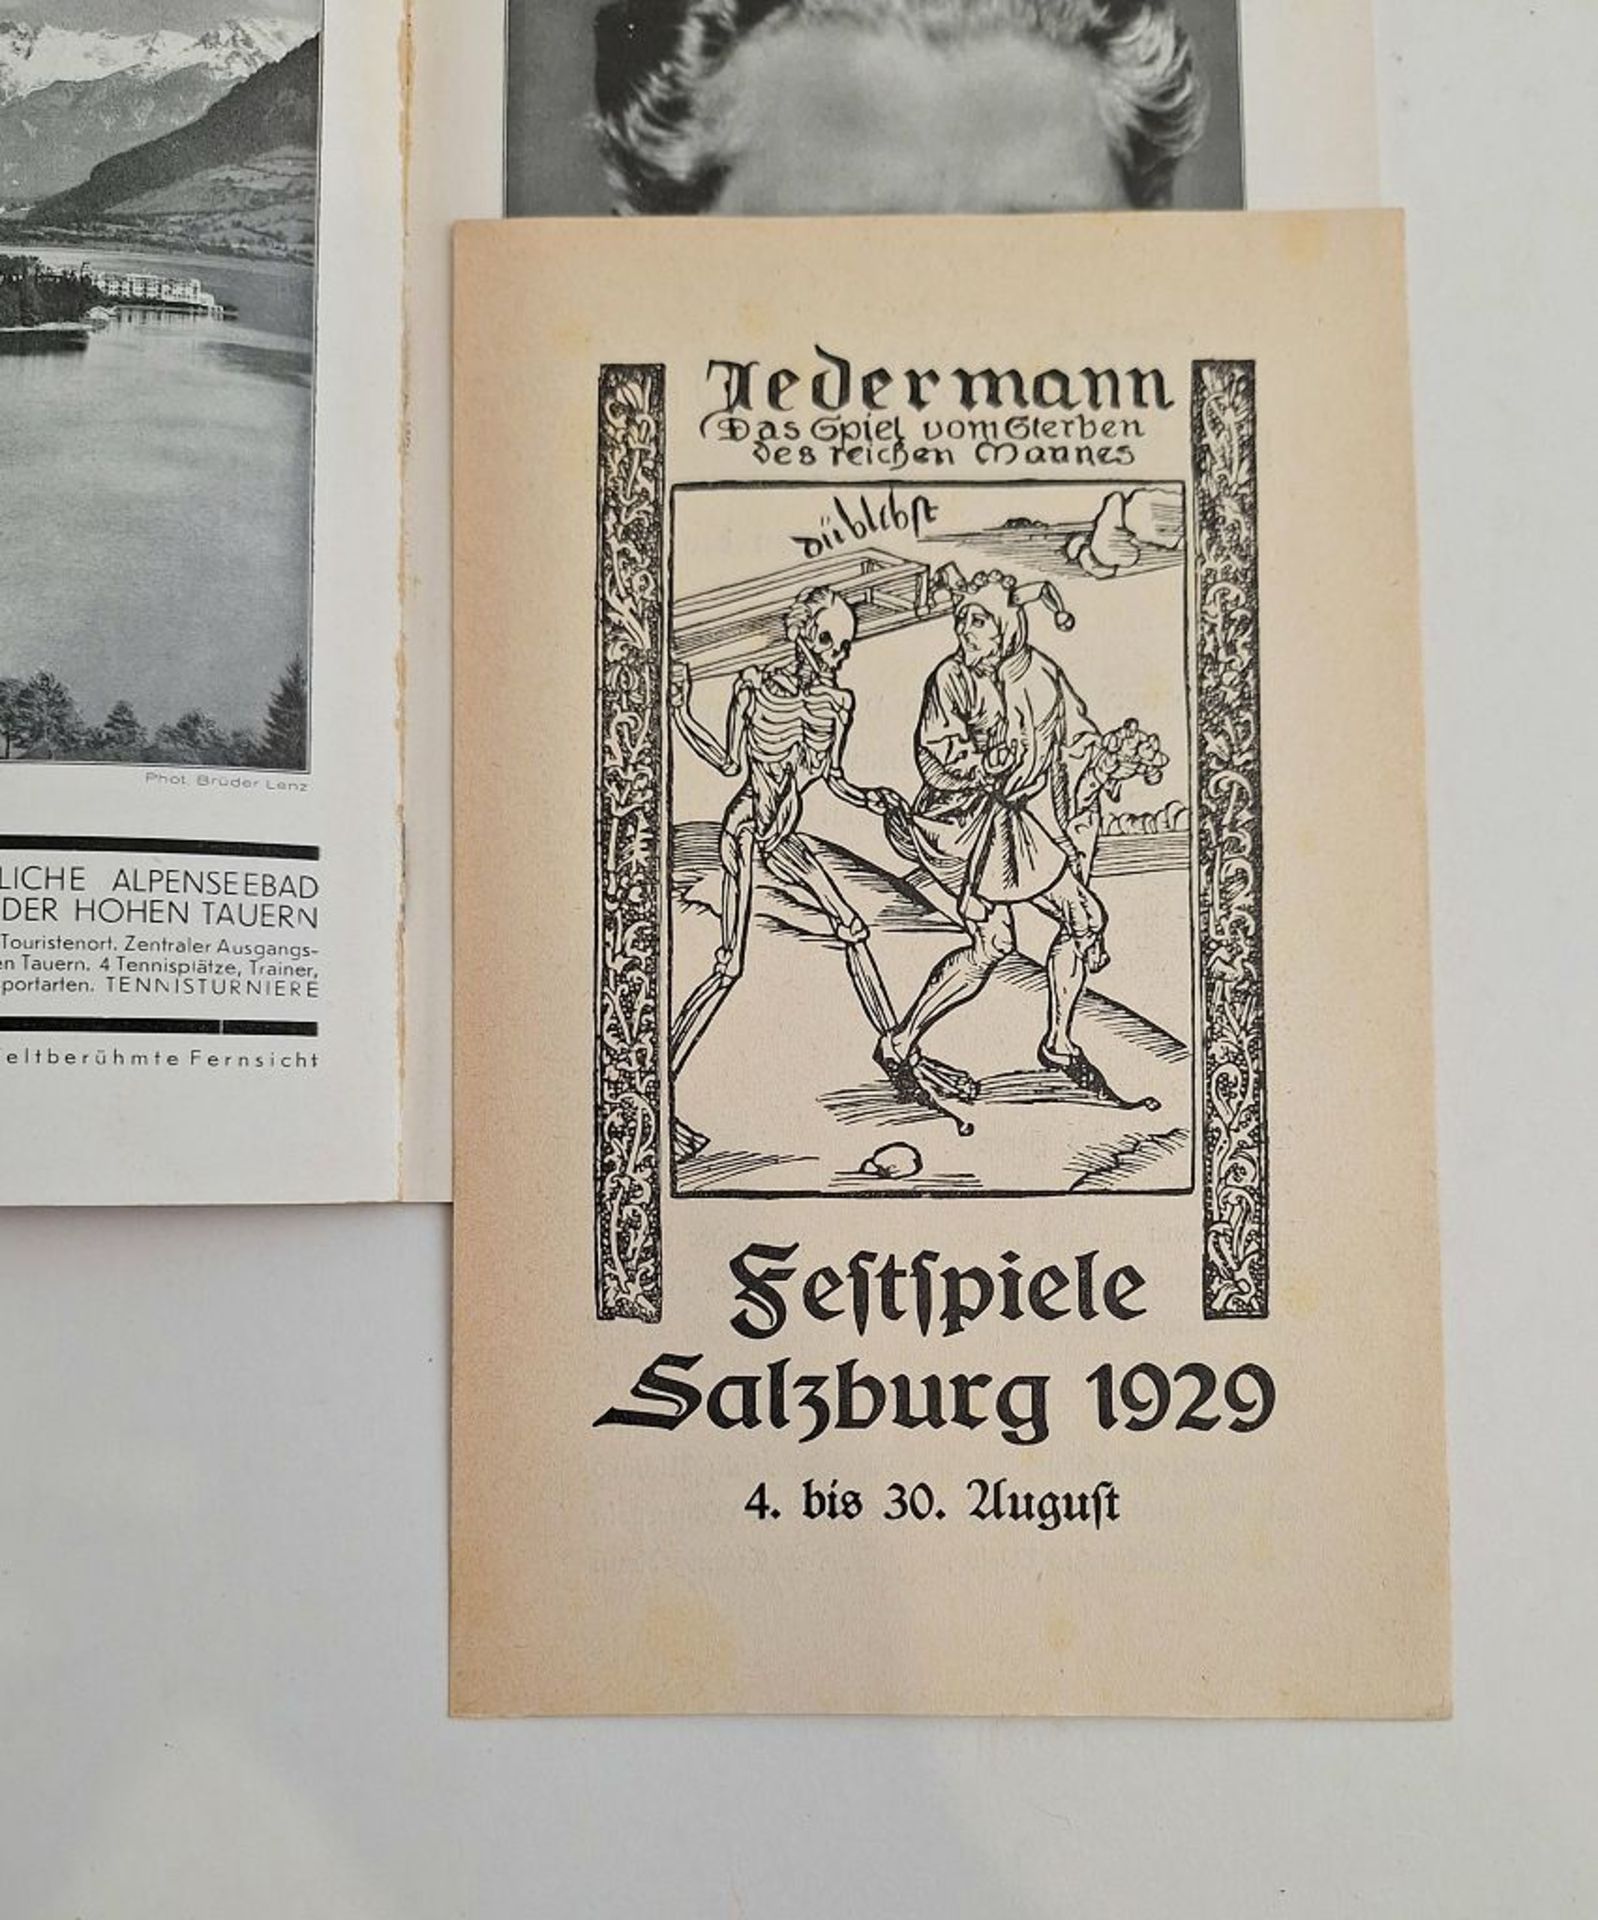 Programm und Führer der Salzburger Festspiele 1929 - Image 3 of 4